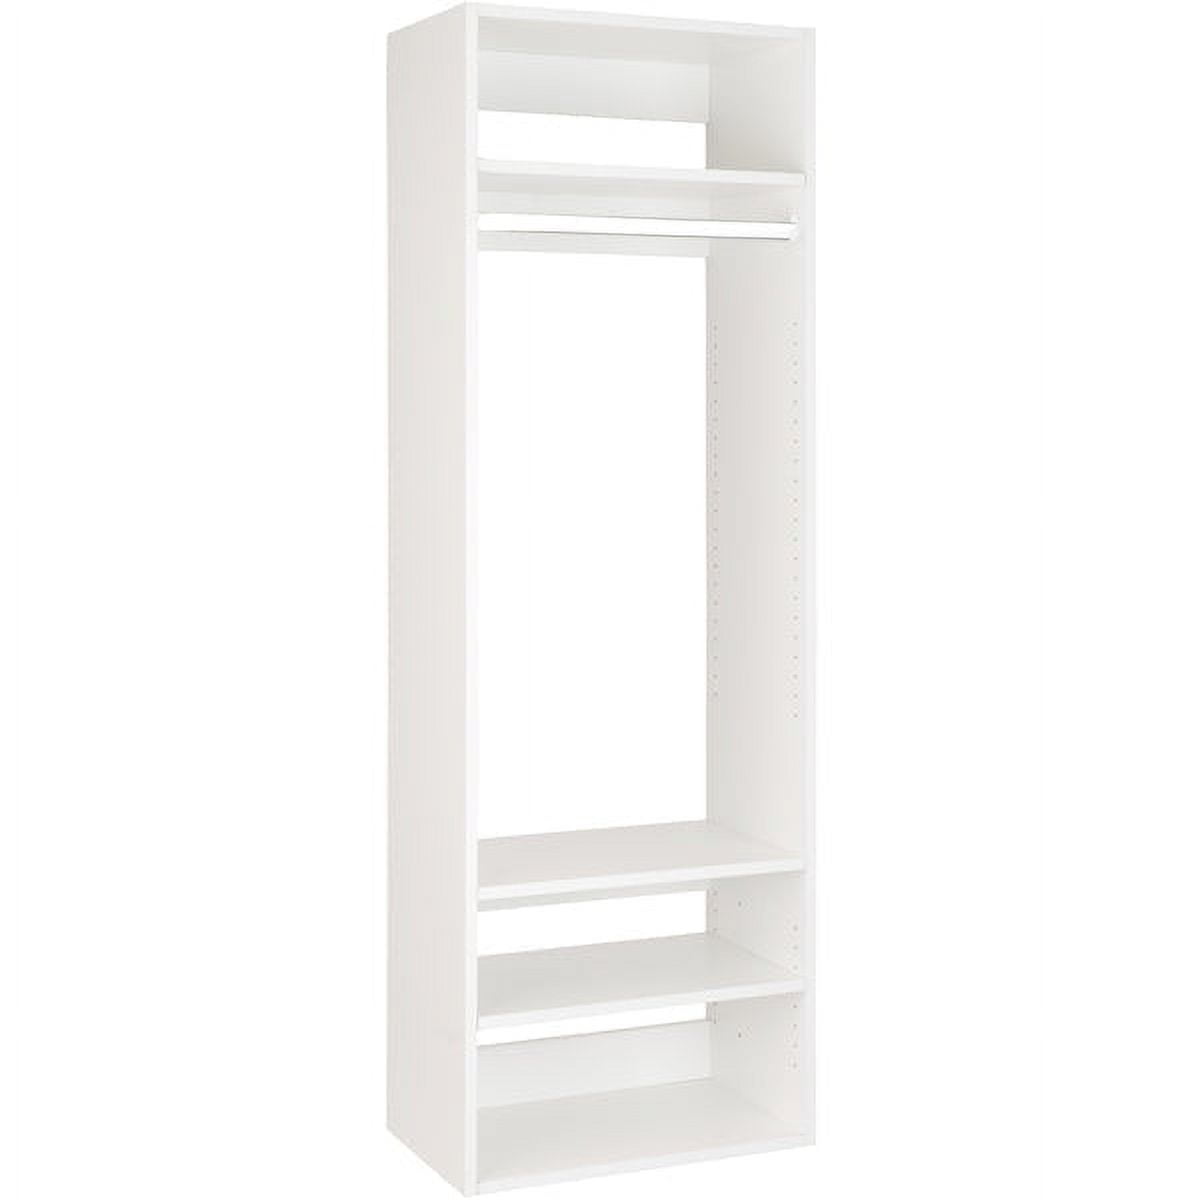 Closet Shelves Tower - Modular Closet System With Shoe Shelves (8) - Corner  Closet System - Closet Organizers And Storage Shelves (White, 25.5 inches